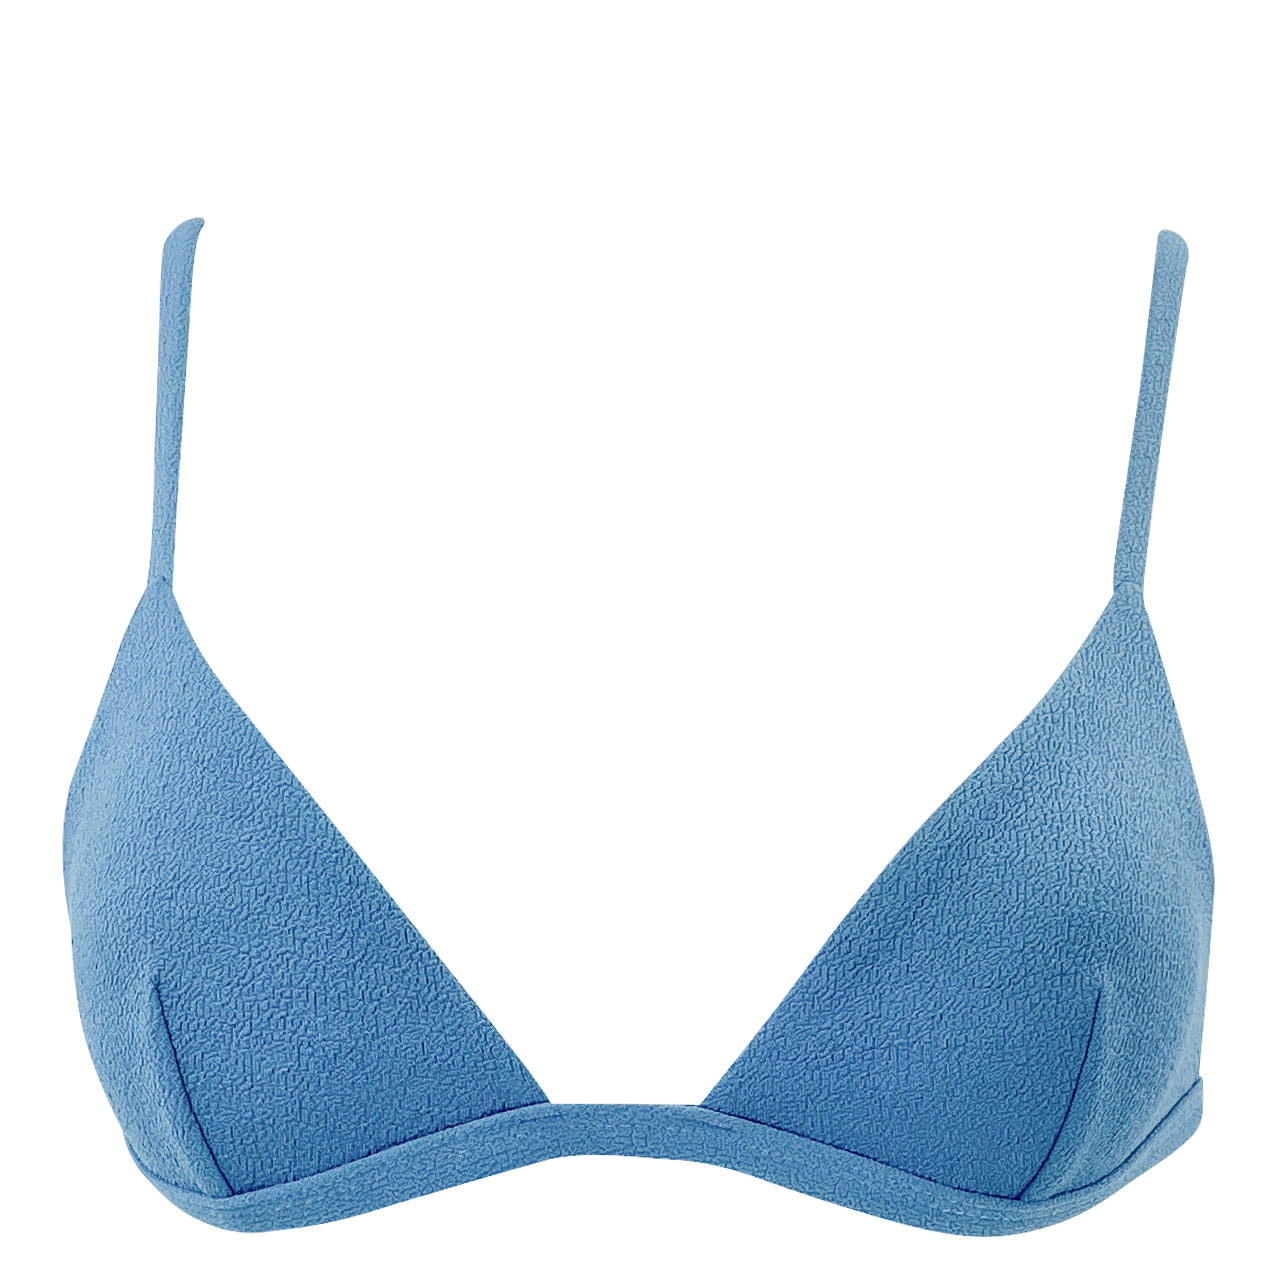 Matteau Petite Triangle Bikini Top in Blue - Discounts on Matteau at UAL